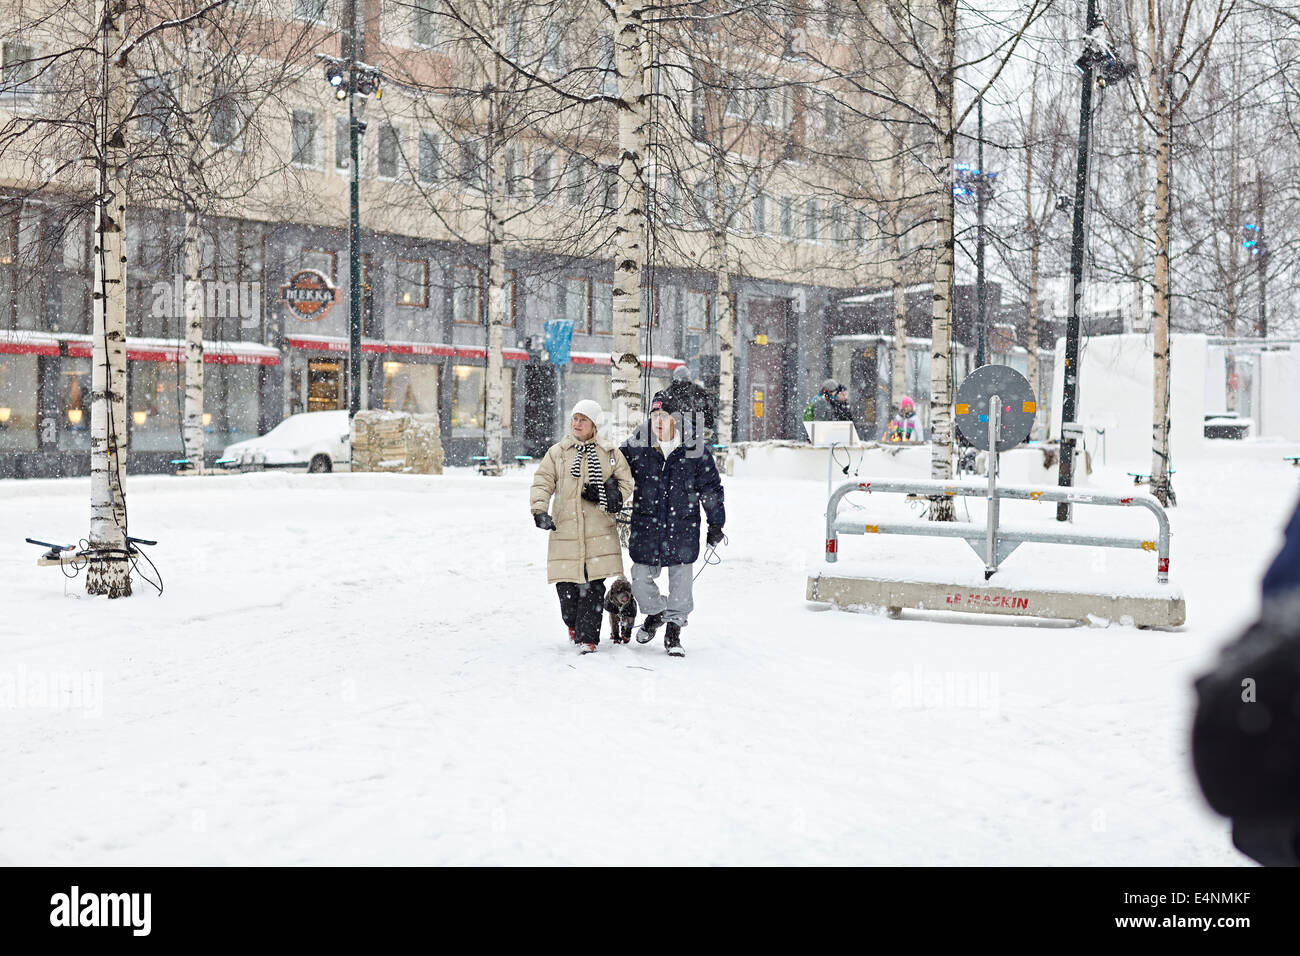 UMEA, die Universitätsstadt im Norden Schwedens, die als Europäische Kulturhauptstadt für das Jahr 2014 ausgewählt wurde Stockfoto